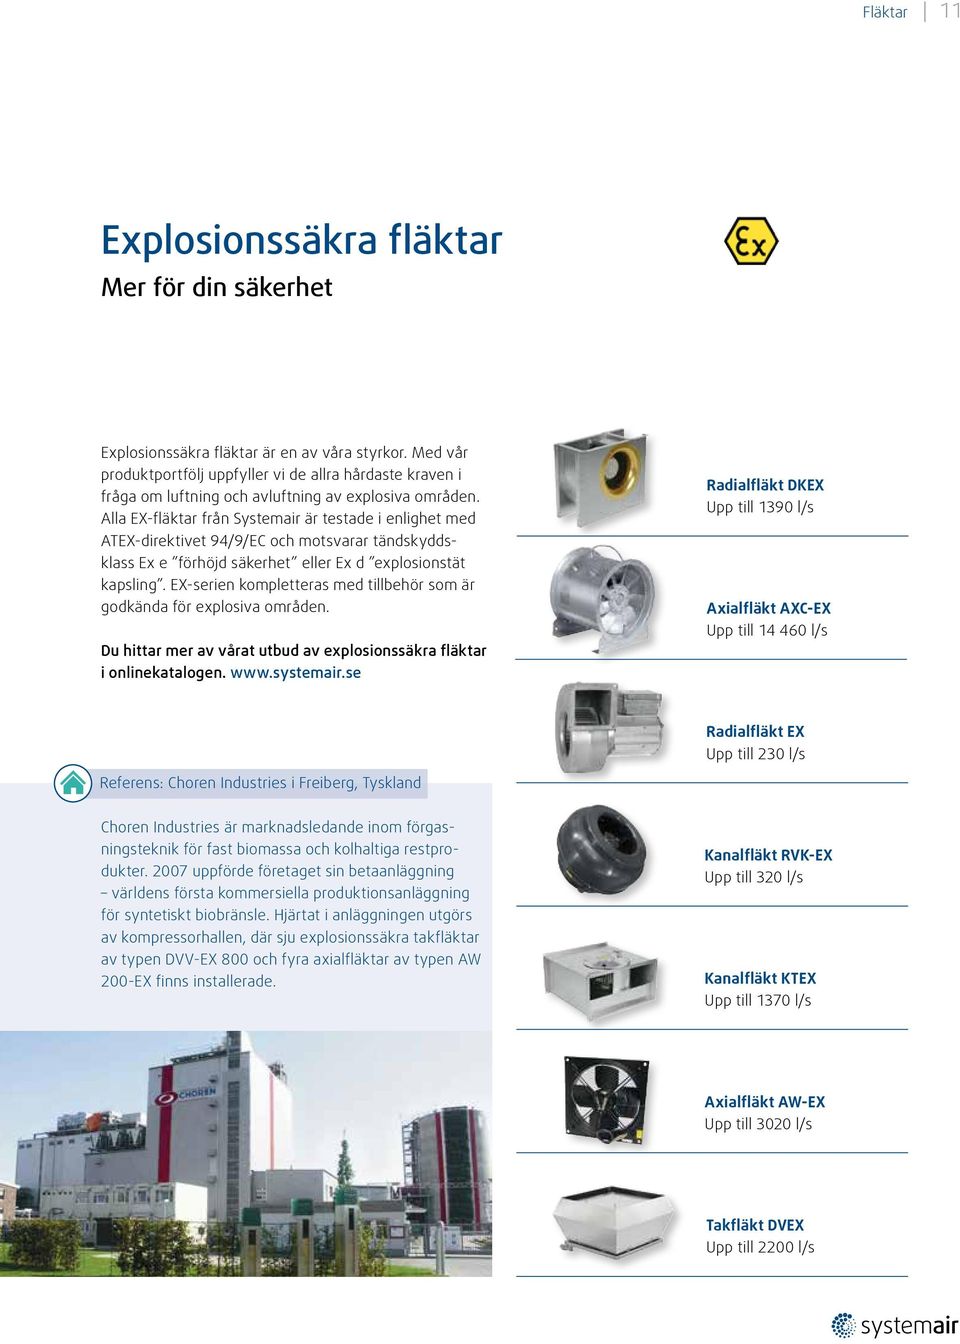 Alla EX-fläktar från Systemair är testade i enlighet med ATEX-direktivet 94/9/EC och motsvarar tändskyddsklass Ex e förhöjd säkerhet eller Ex d explosionstät kapsling.